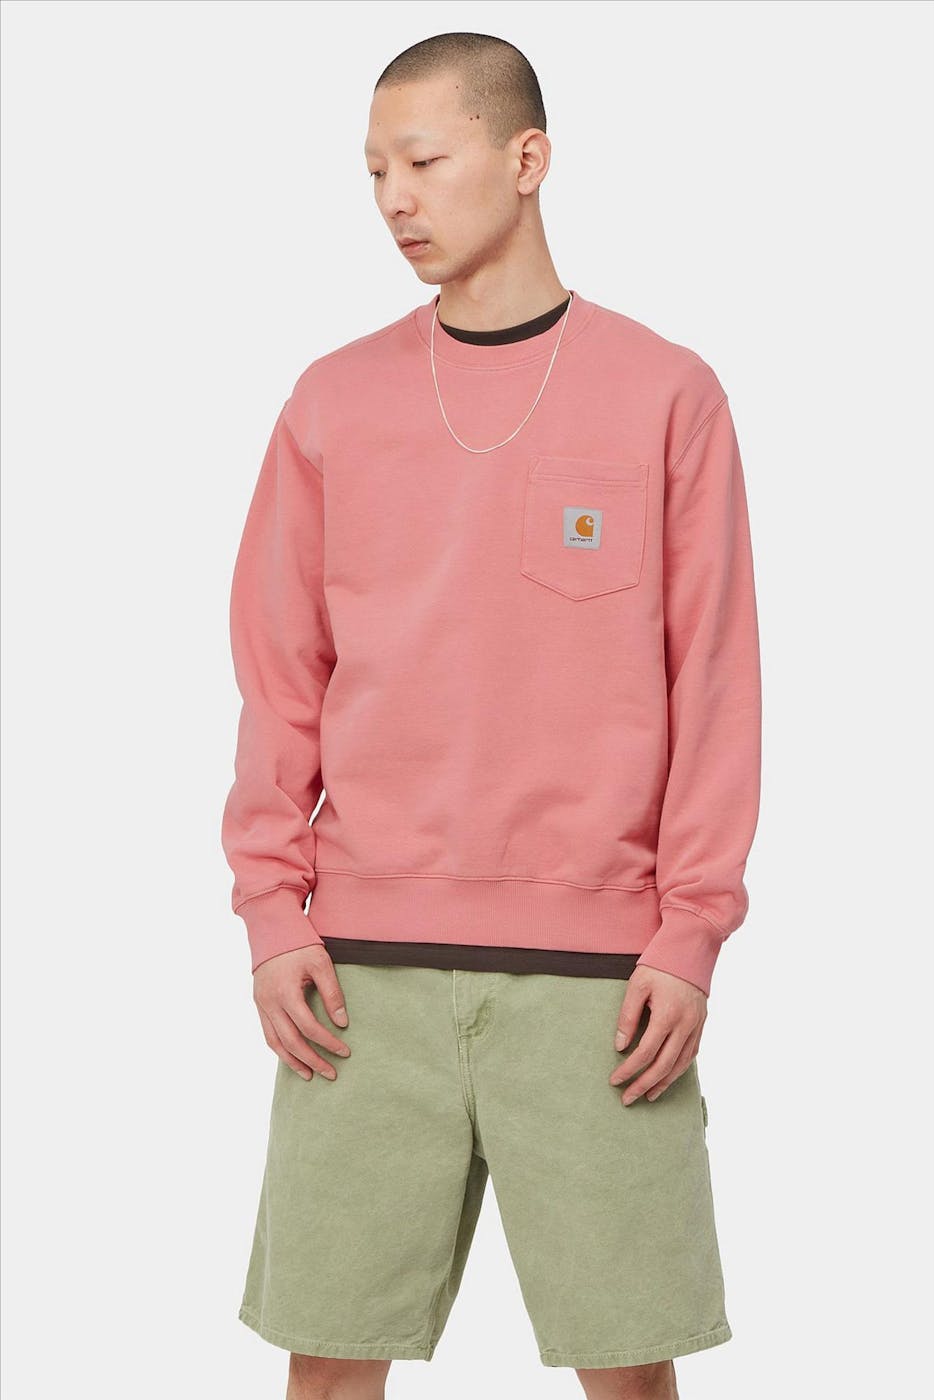 Carhartt WIP - Roze Pocket sweater